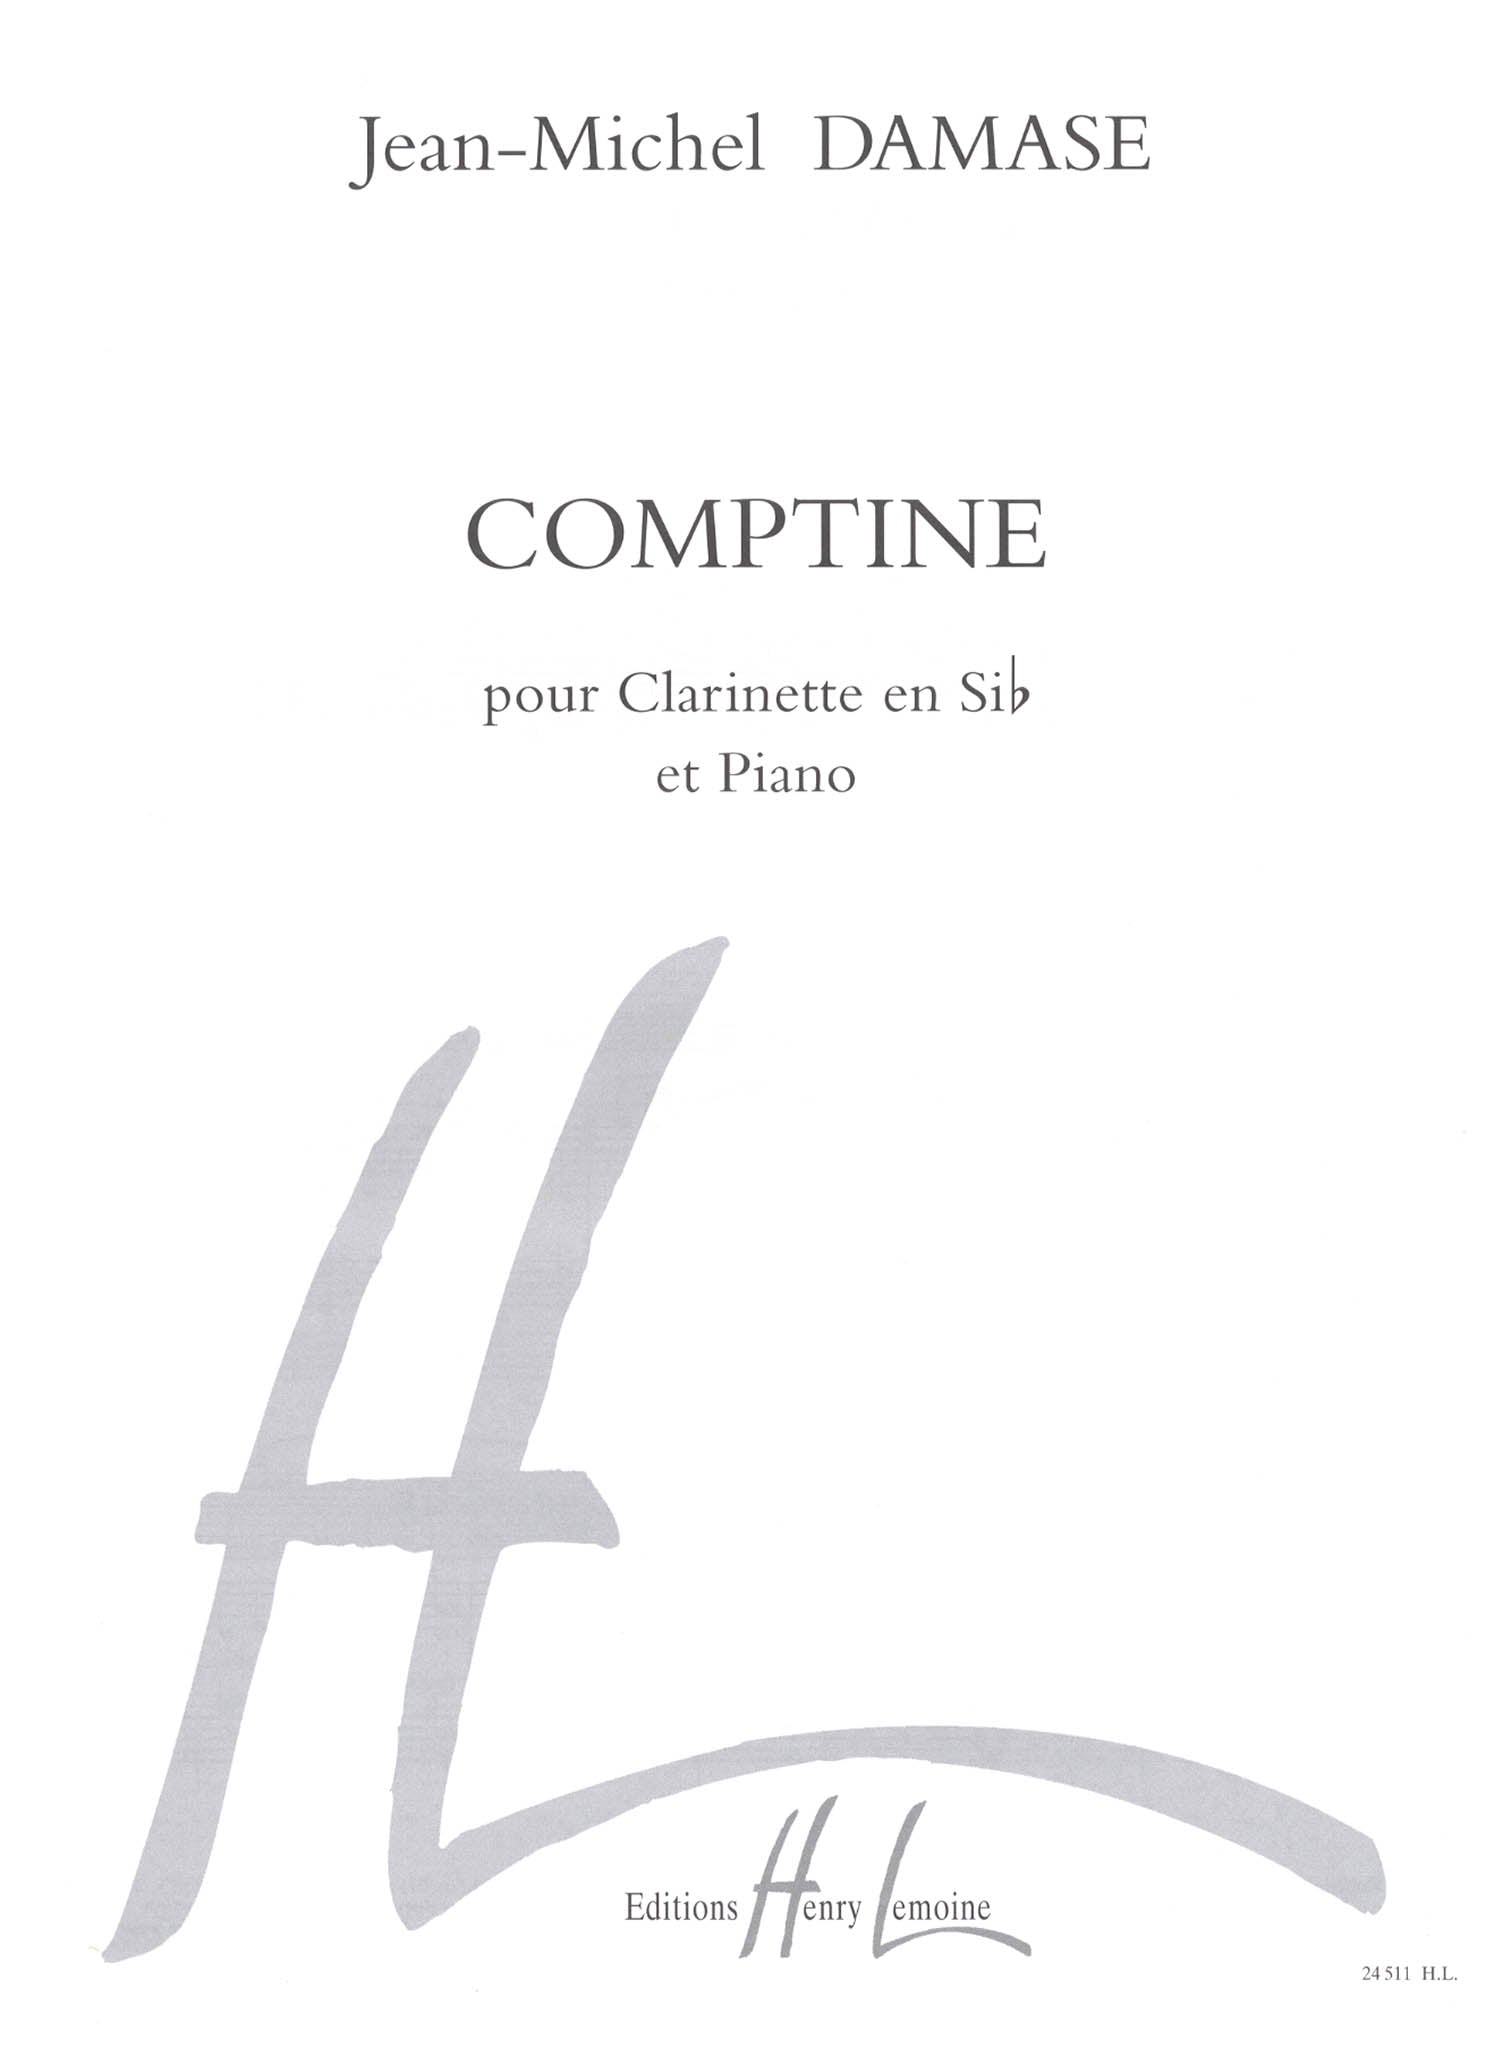 Jean-Michel Damase Comptine clarinet & piano cover